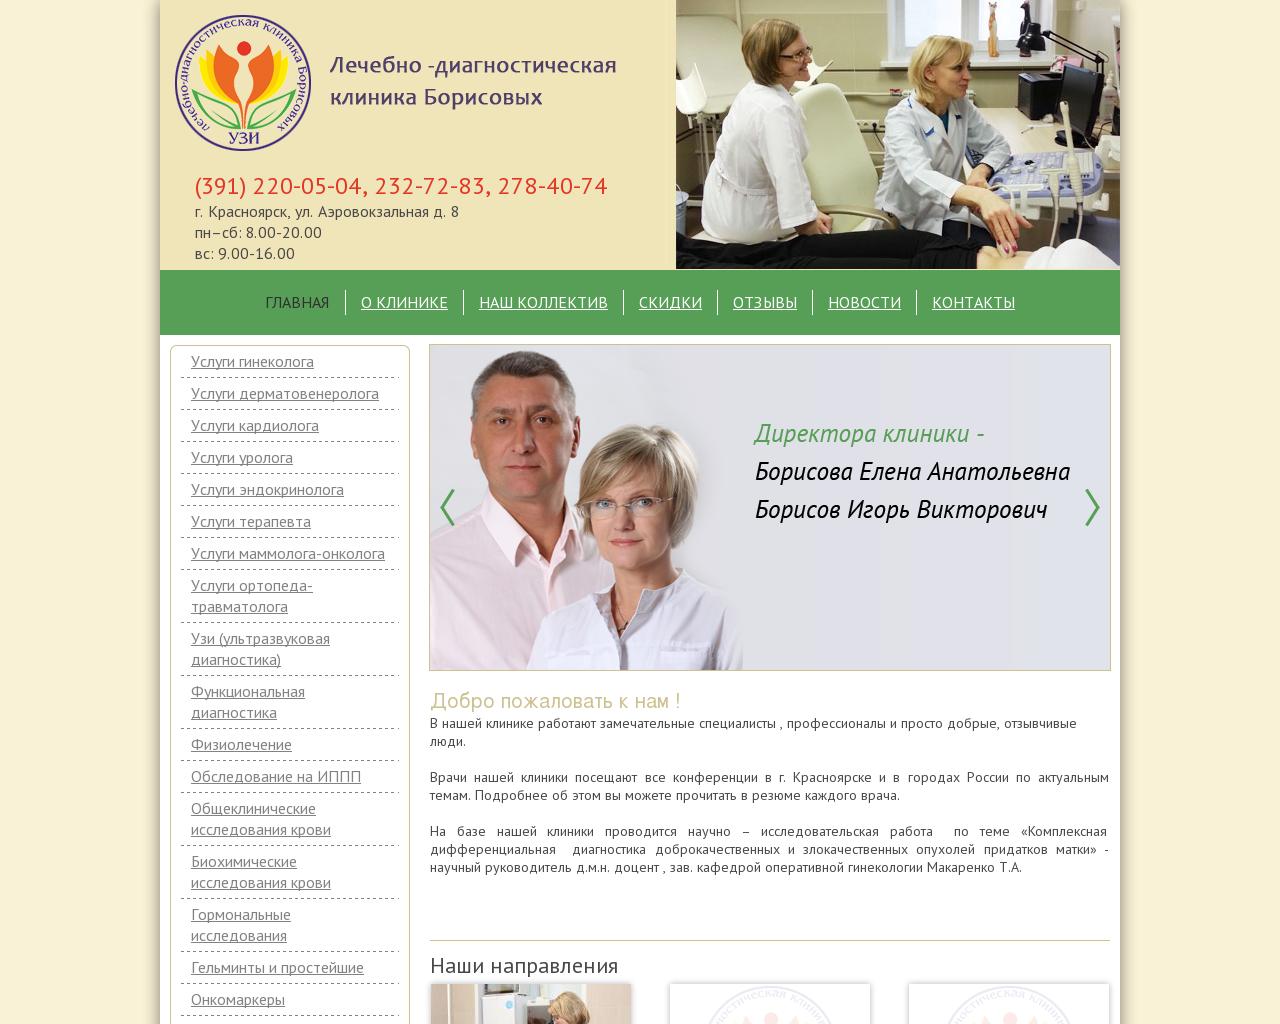 Красноярск клиника борисовых на аэровокзальной официальный сайт врачи